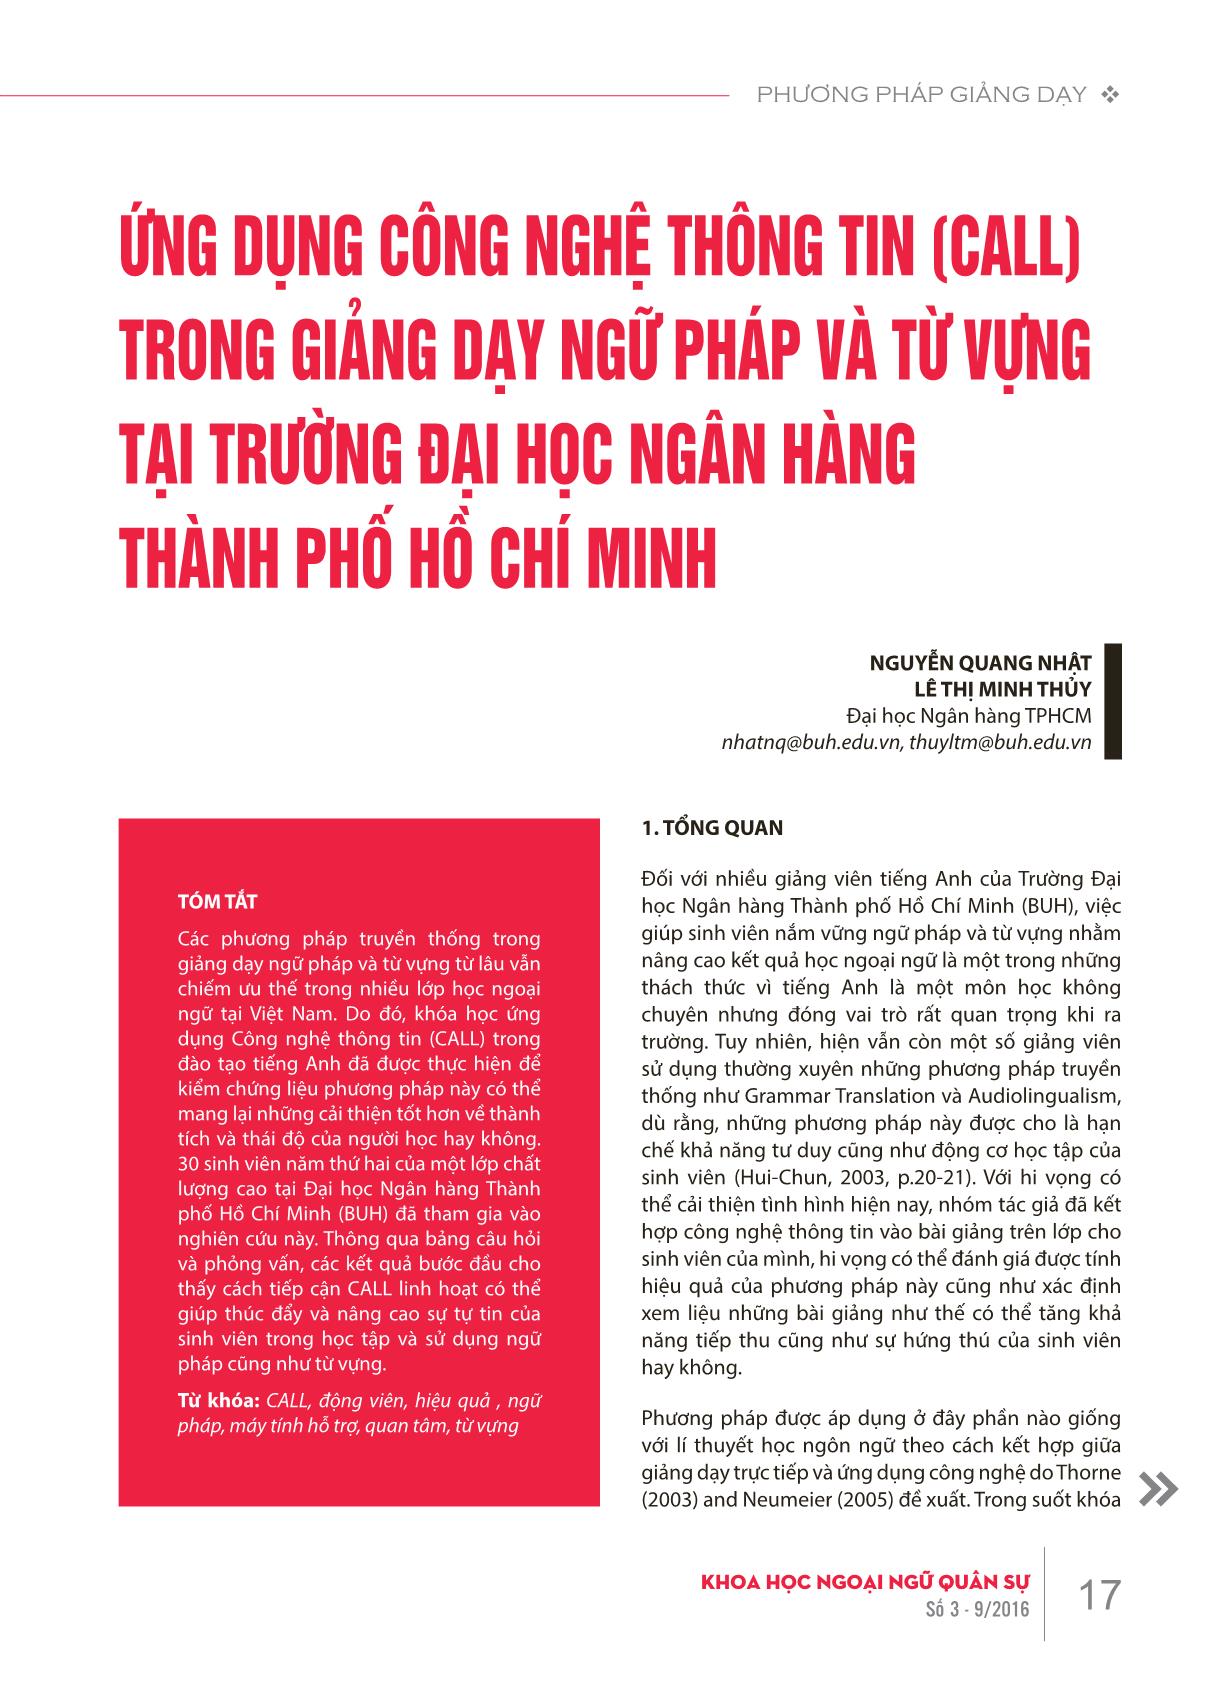 Ứng dụng công nghệ thông tin (Call) trong giảng dạy ngữ pháp và từ vựng tại trường Đại học Ngân hàng thành phố Hồ Chí Minh trang 1